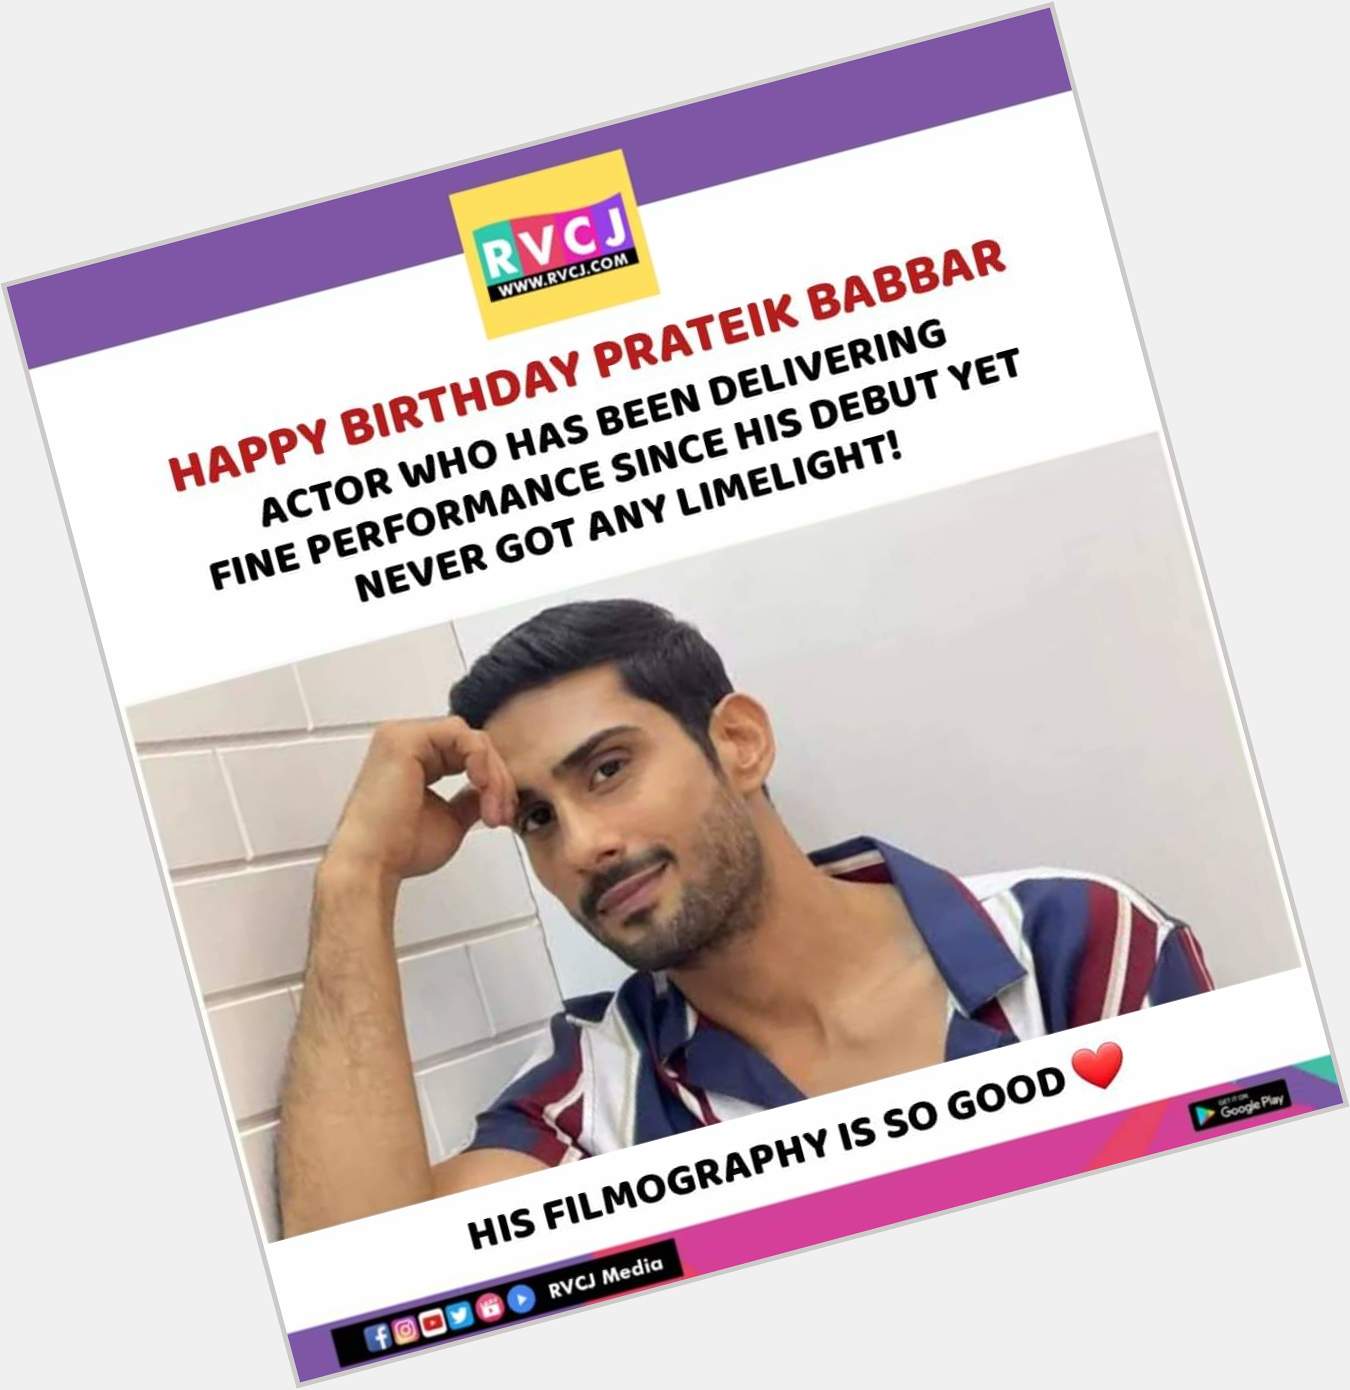 Happy Birthday Prateik Babbar!    